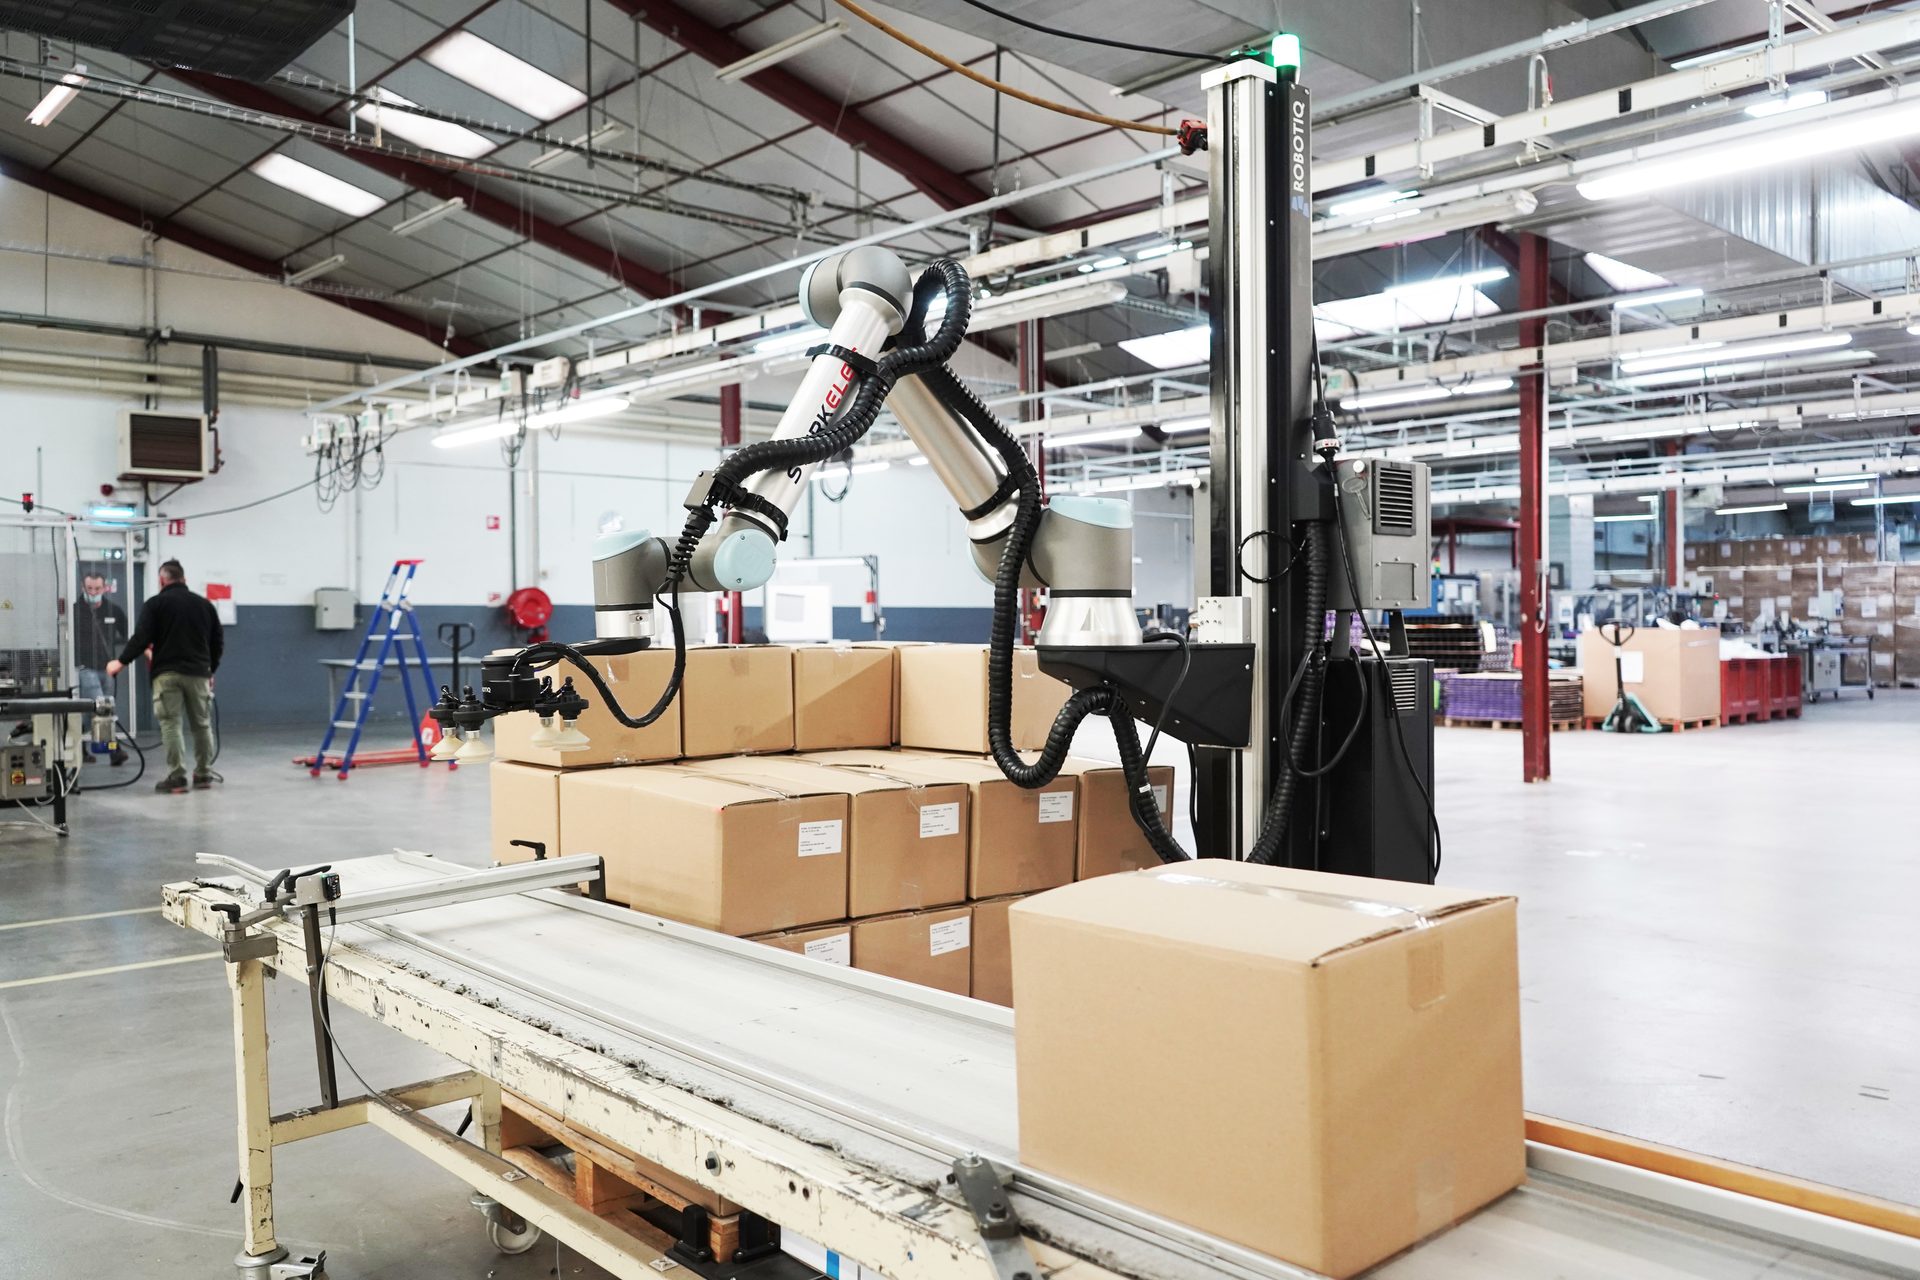 Industrial interior, Robotic arm, Conveyor, Cartons